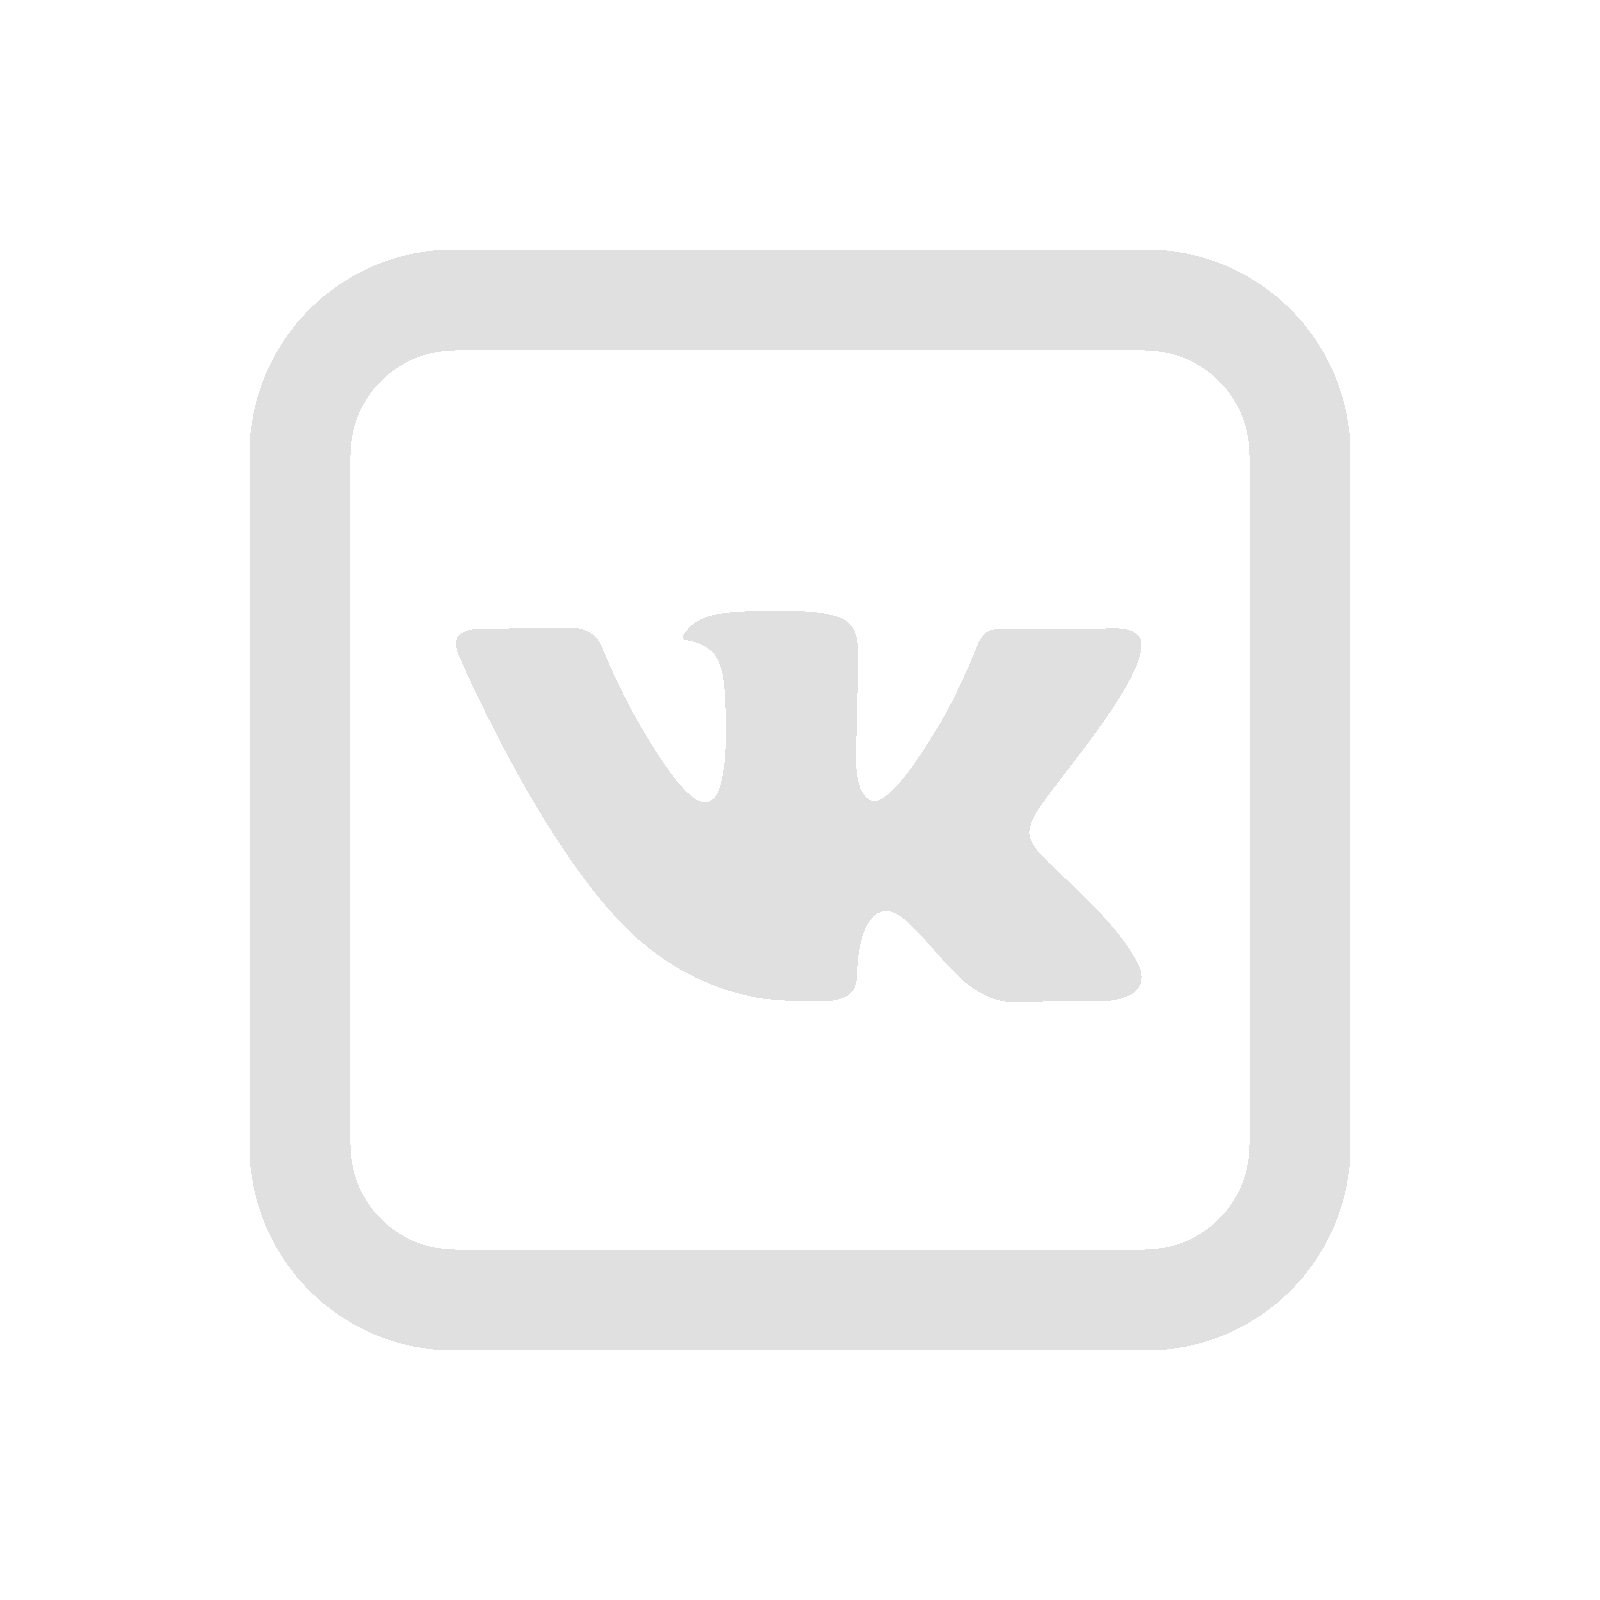 Vk com verniy put. Логотип ВК. Значок ВК белый. Прозрачный значок ВК. Значок мл.